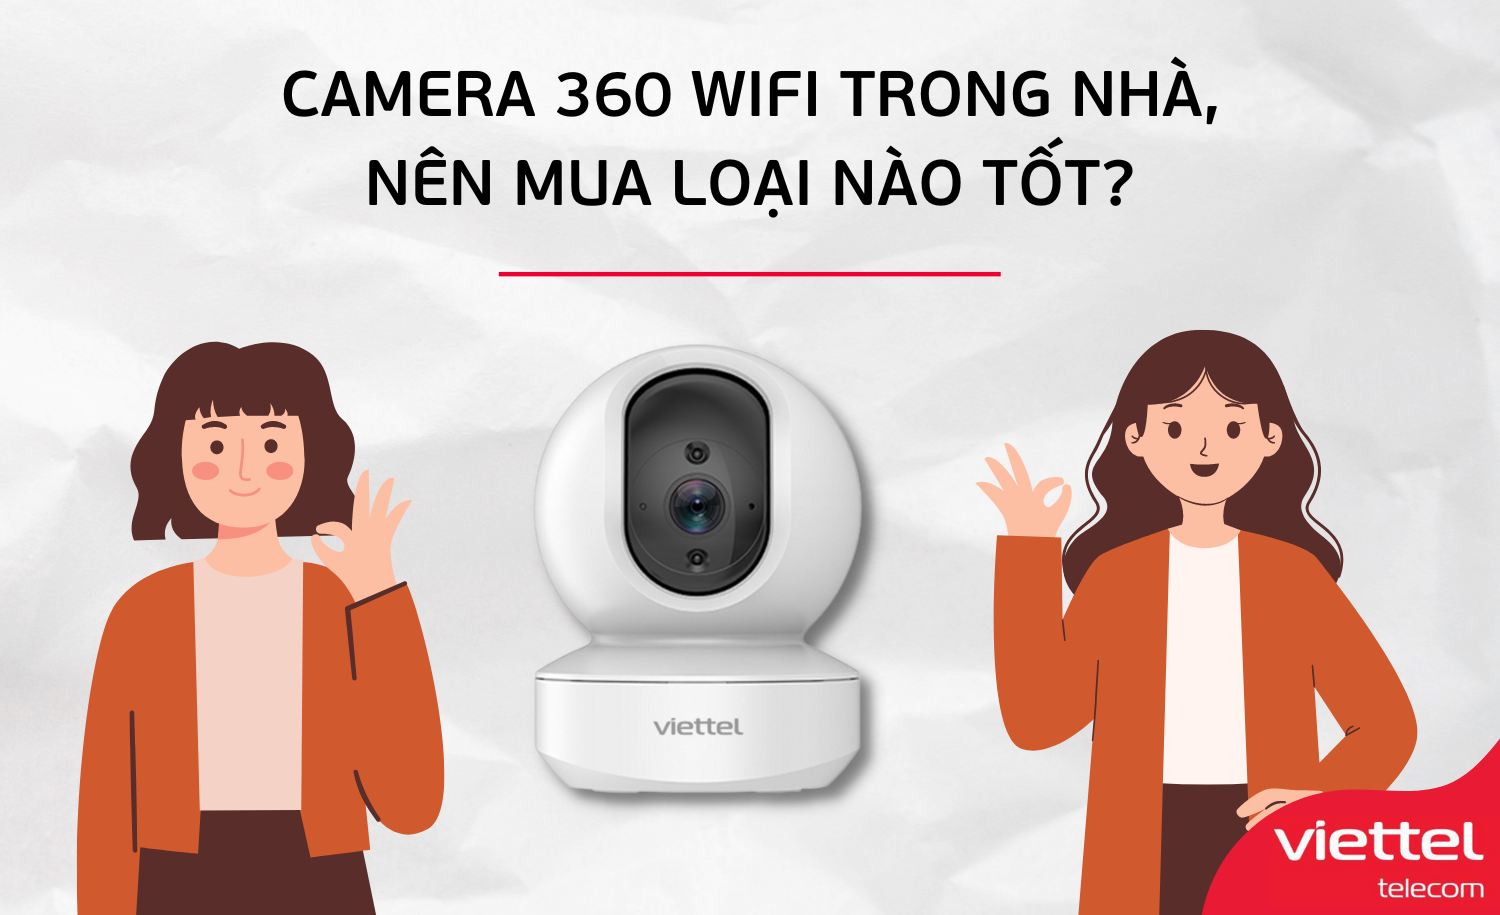 Camera 360 wifi trong nhà, nên mua loại nào tốt